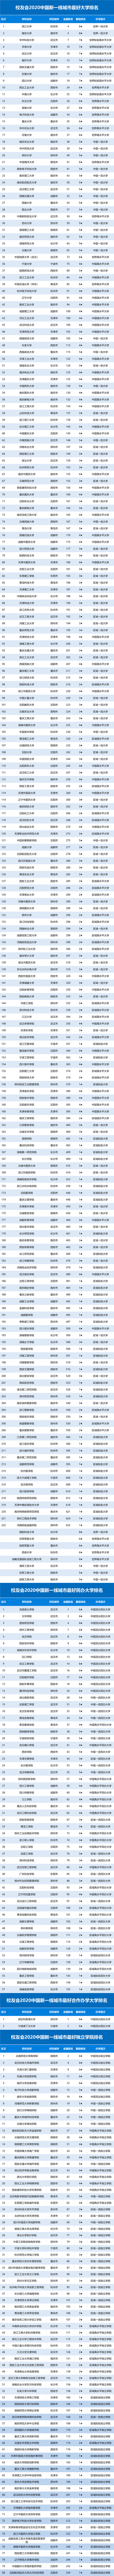 2020一线城市排名昆_2020年全球城市综合排名:中国一线城市、新一线城市